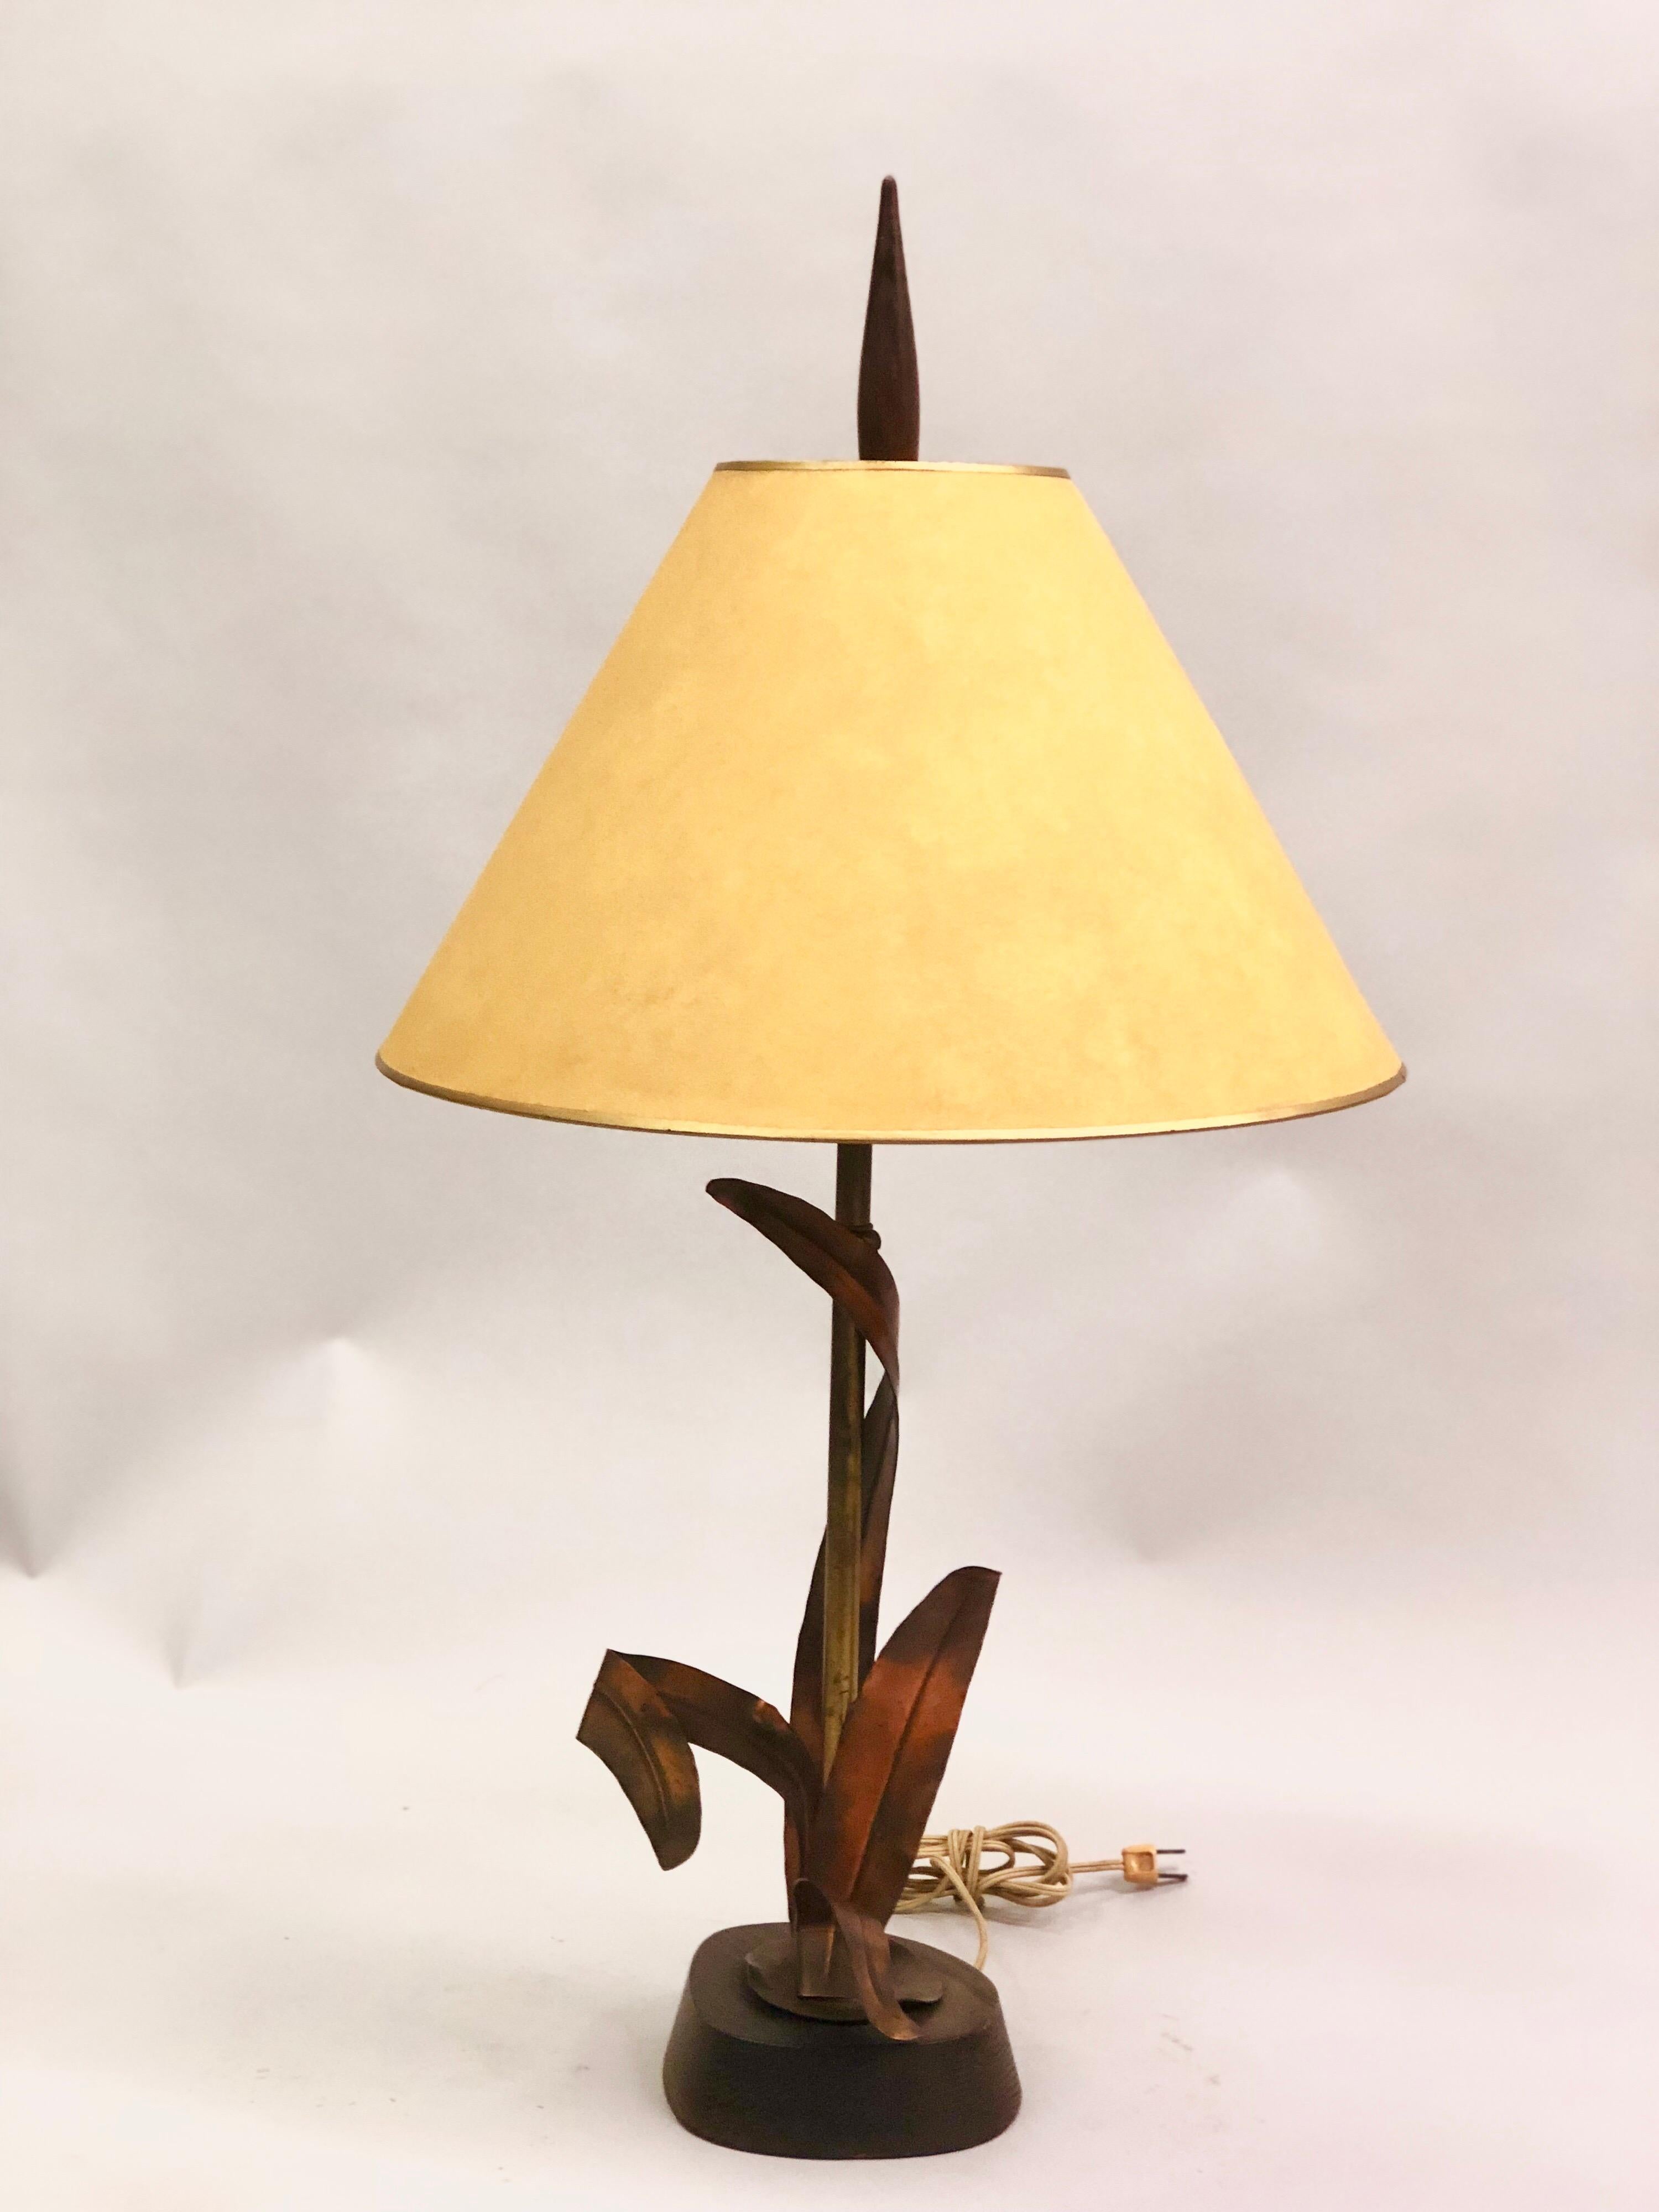 Lampe de table en cuivre, bronze et laiton de la Maison Charles et Fils. Le cuivre est élégamment formé pour entourer une tige en laiton. La base et l'épi de faîtage sont en bois.  Dimensions : Le diamètre de la lampe elle-même est de 8